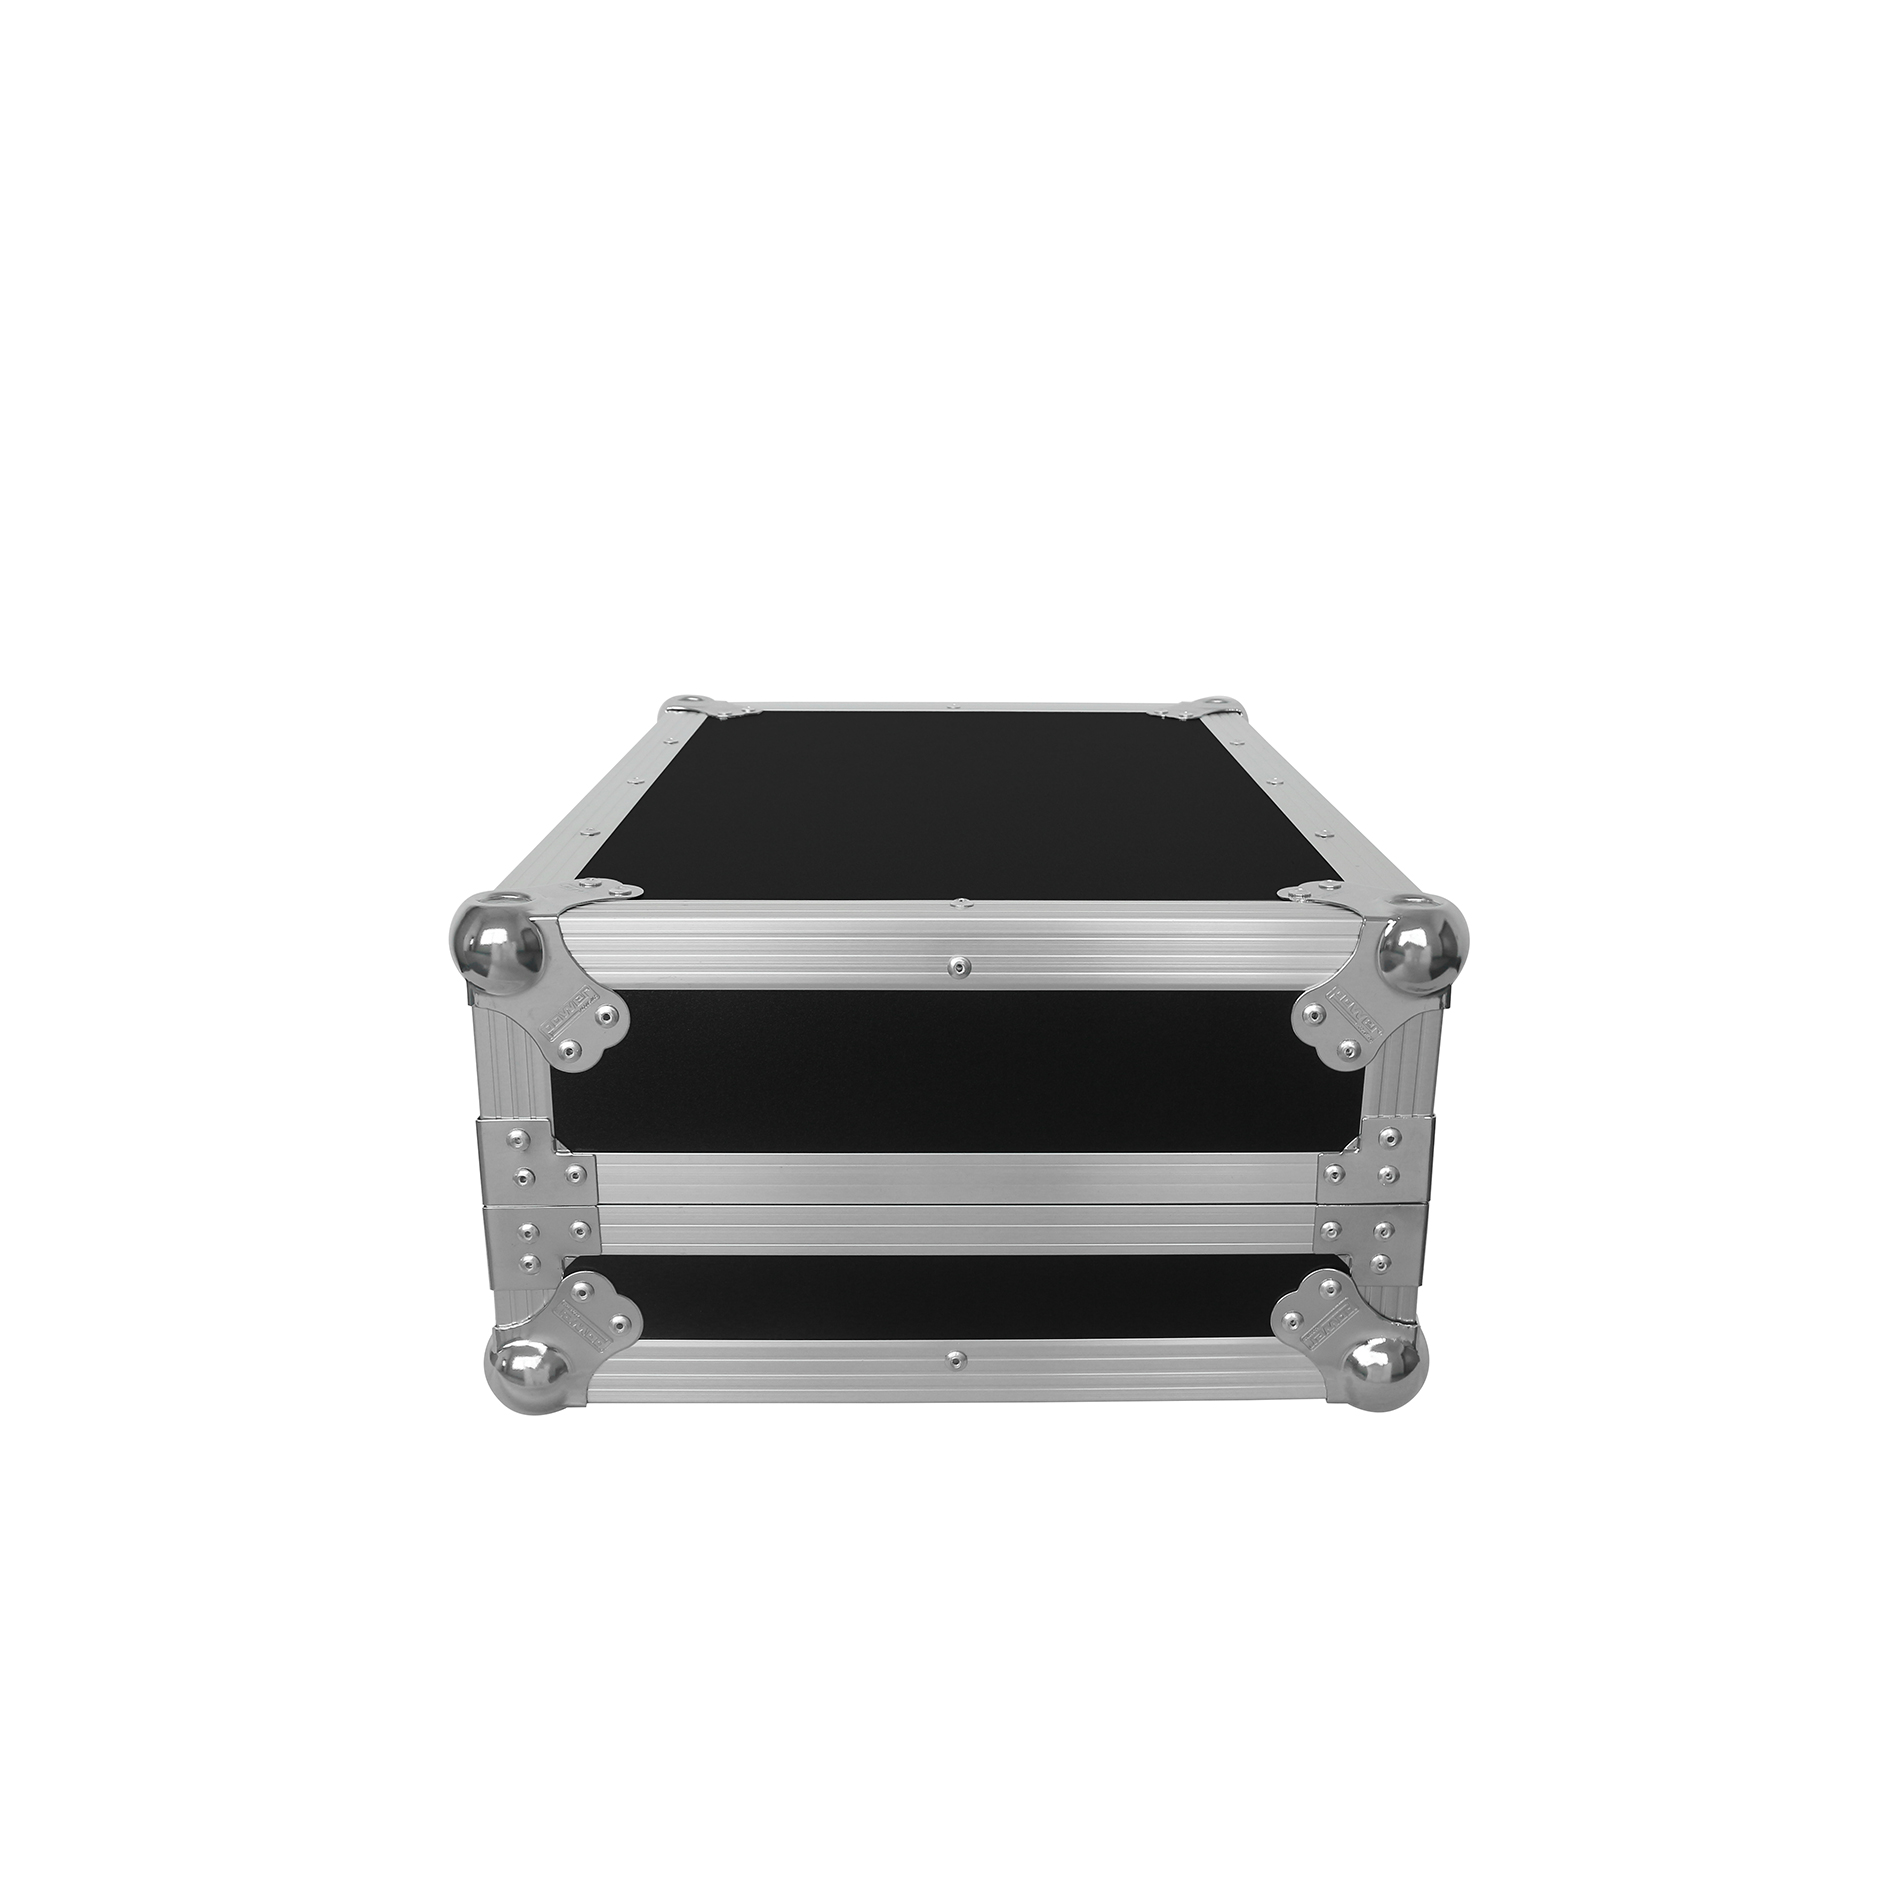 Power Acoustics Fcm Dm3s - Mixer case - Variation 2